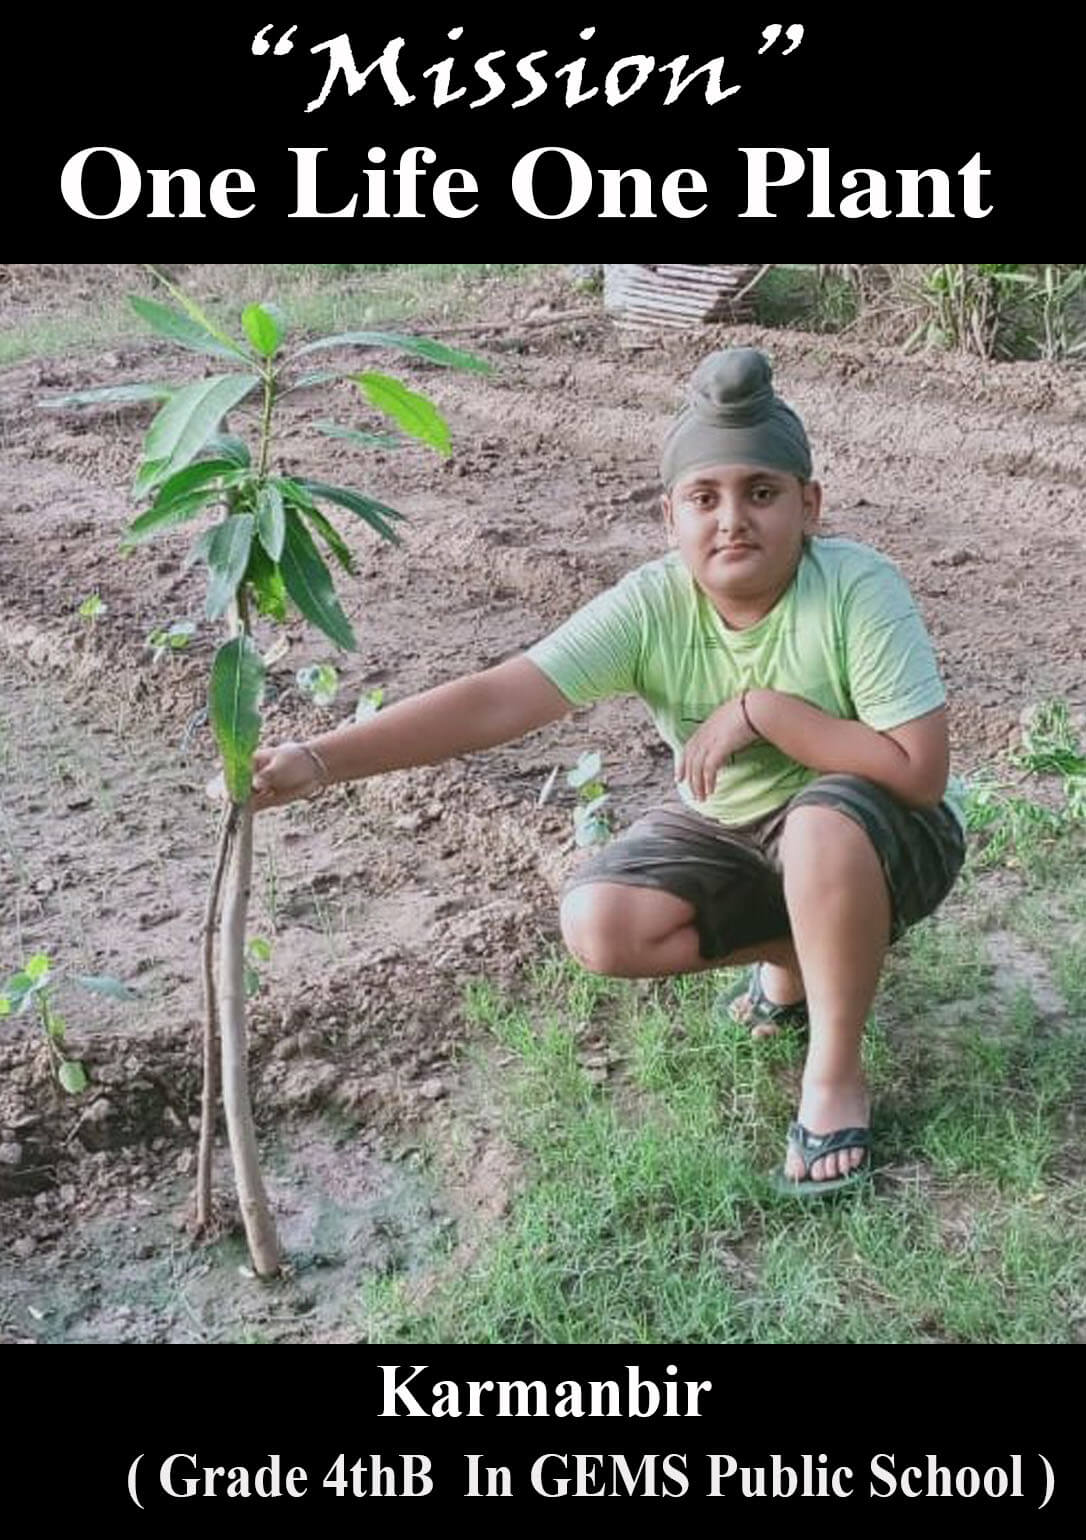 Mission “One Life One Plant” Karmanbir 4th-B  Planting a Sapling